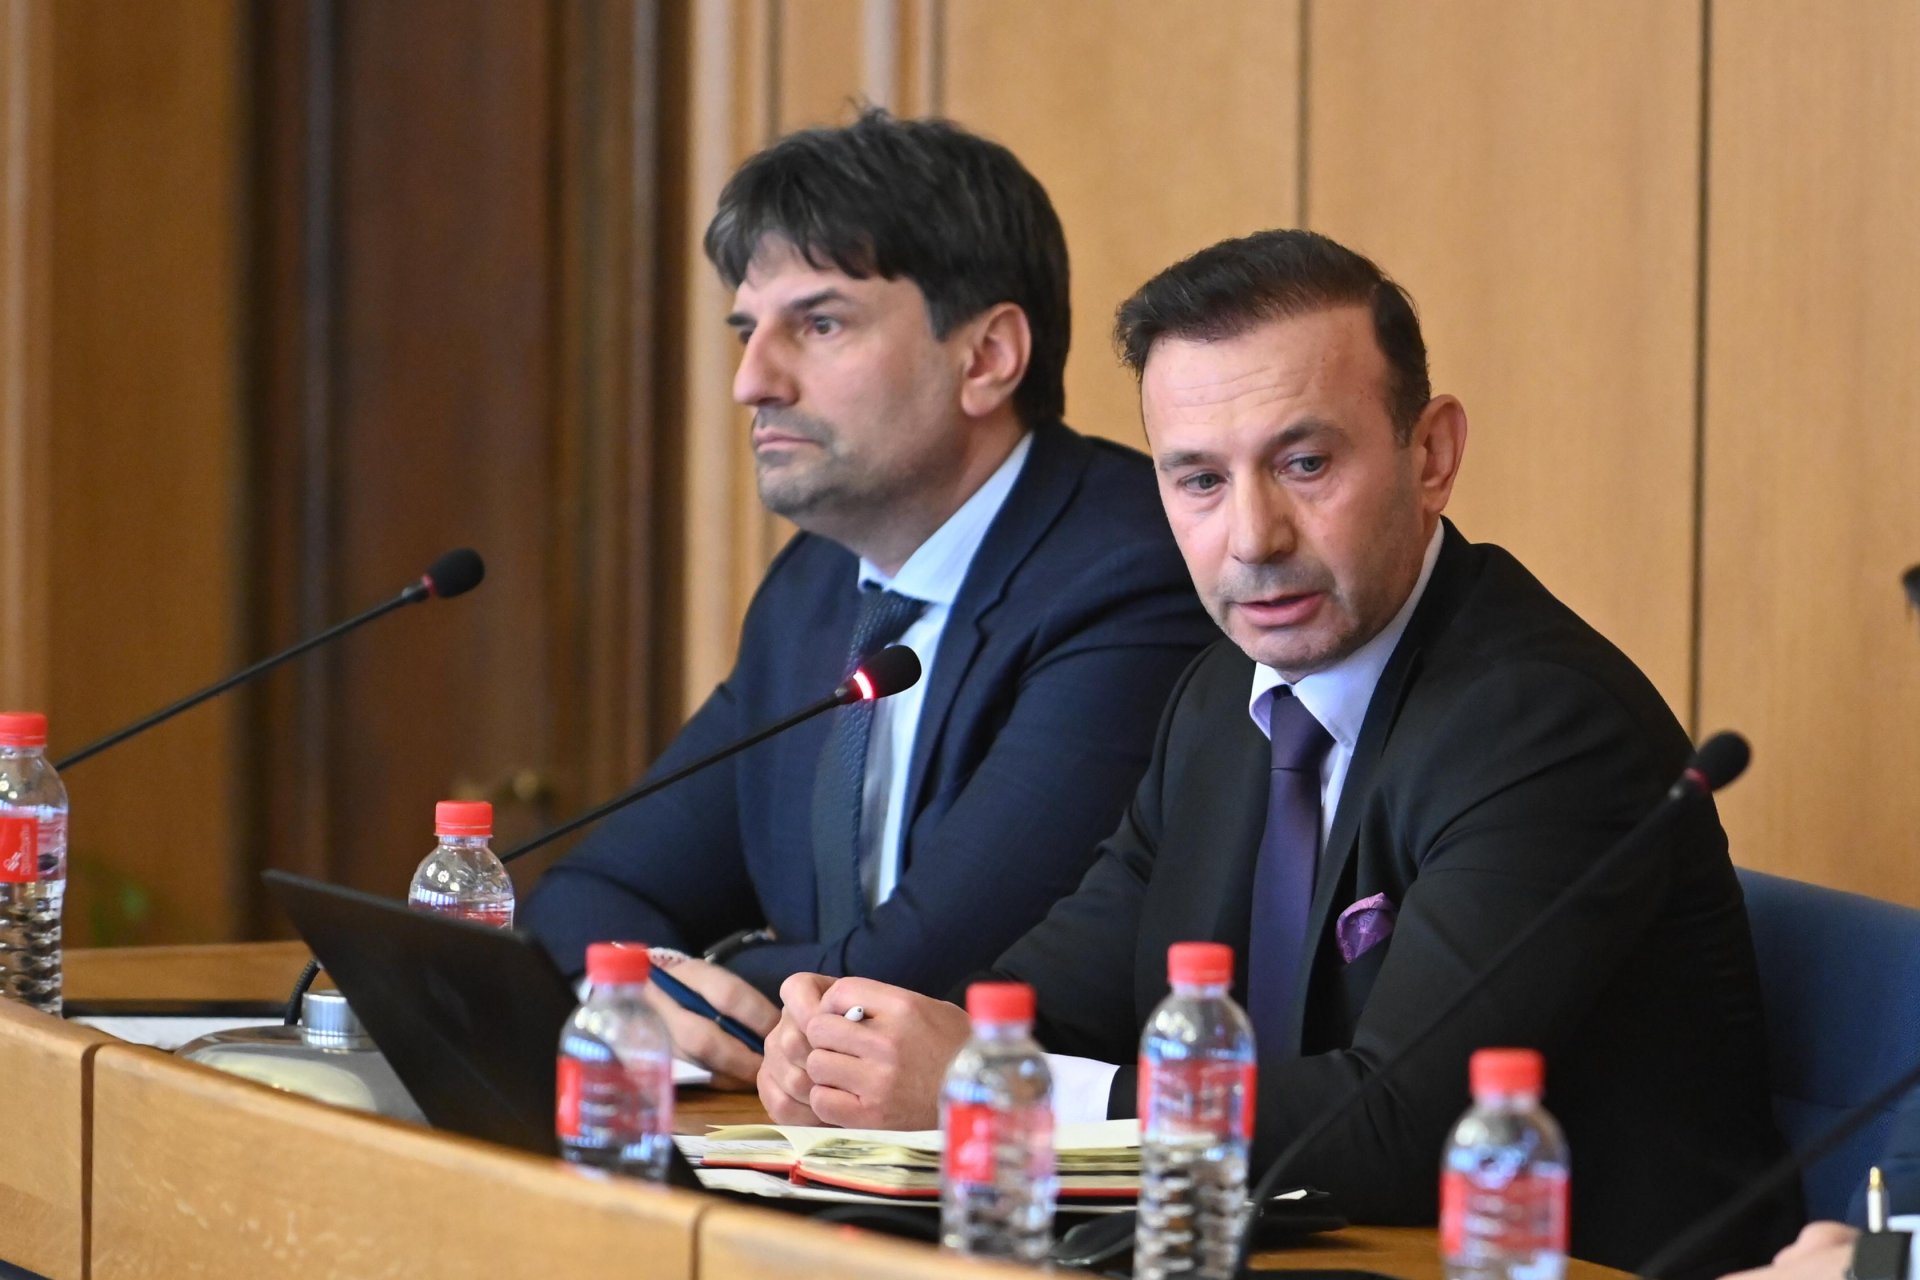 Шефът на СДВР гл. комисар Любомир Николов и гл. секретар на МВР Живко Коцев докладват пред общинските съветници по двата случая, предизвикали дискусии 